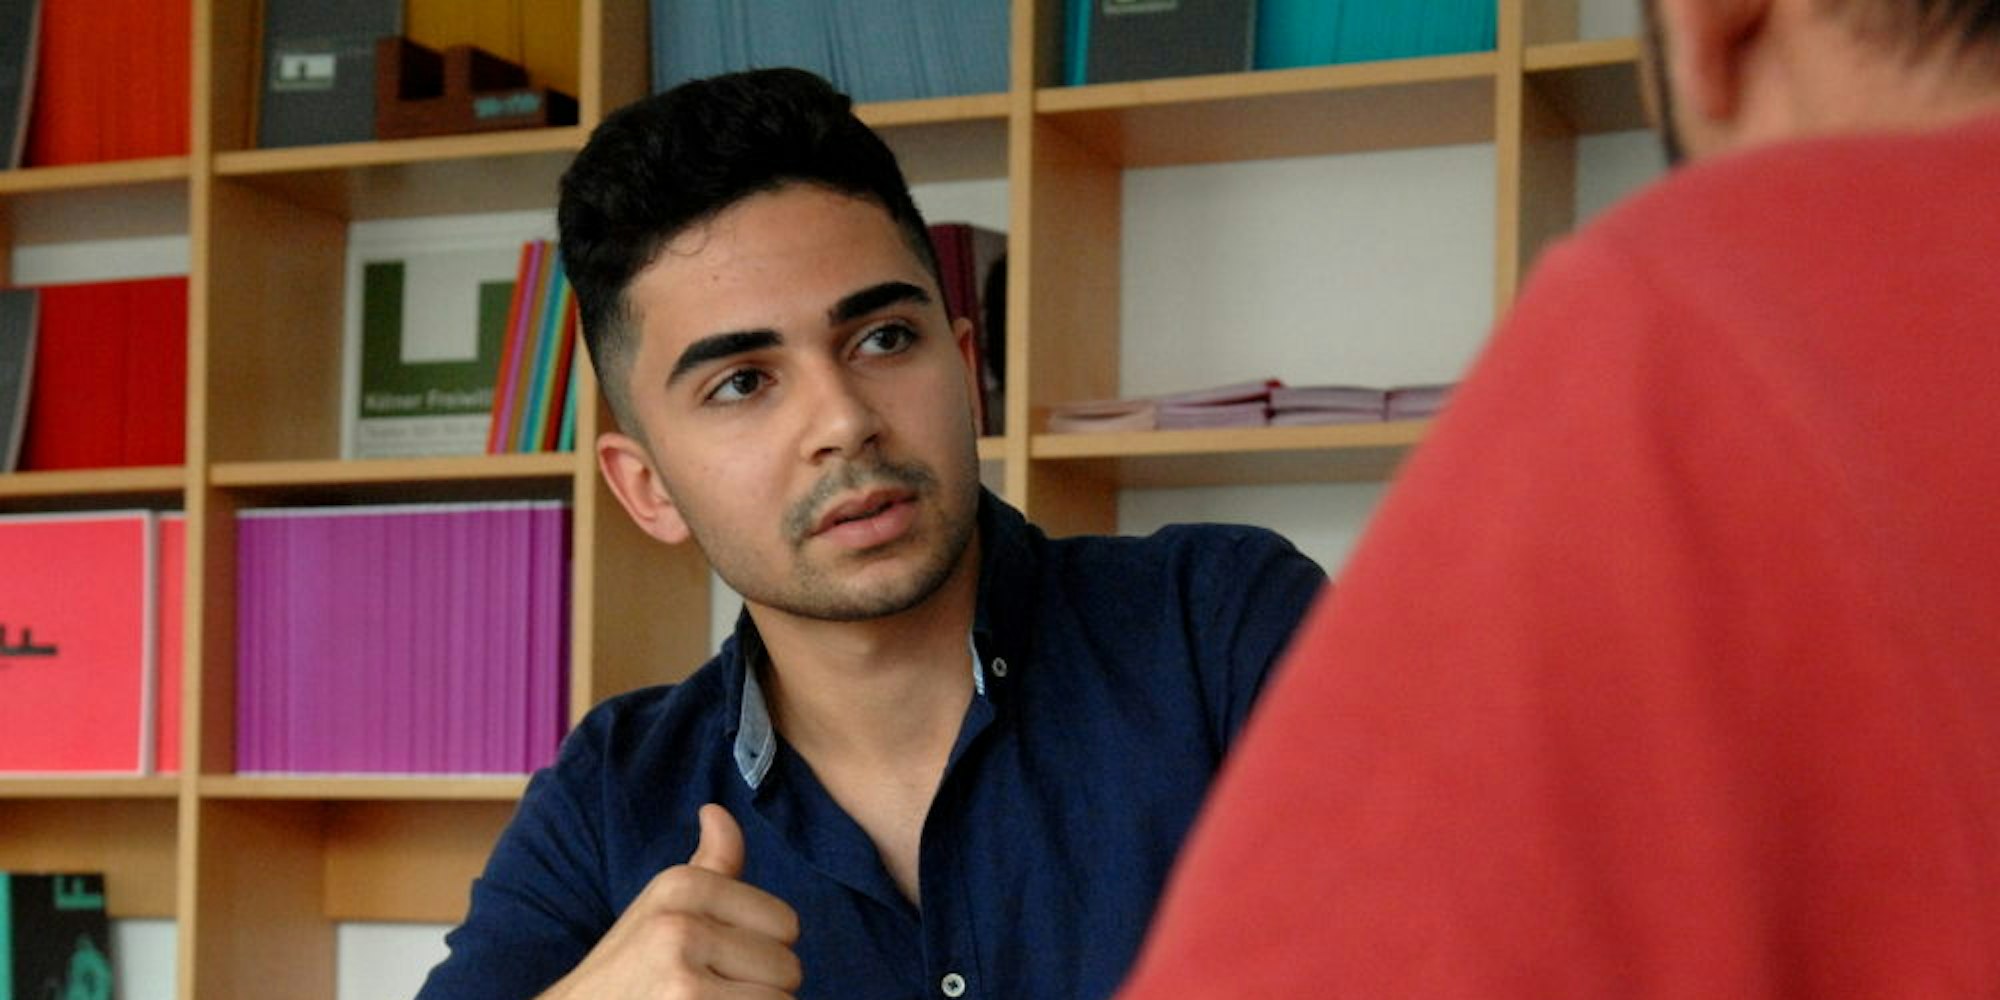 Rami floh aus Damaskus – Jetzt hilft er in Köln anderen Flüchtlingen unter anderem als Dolmetscher.